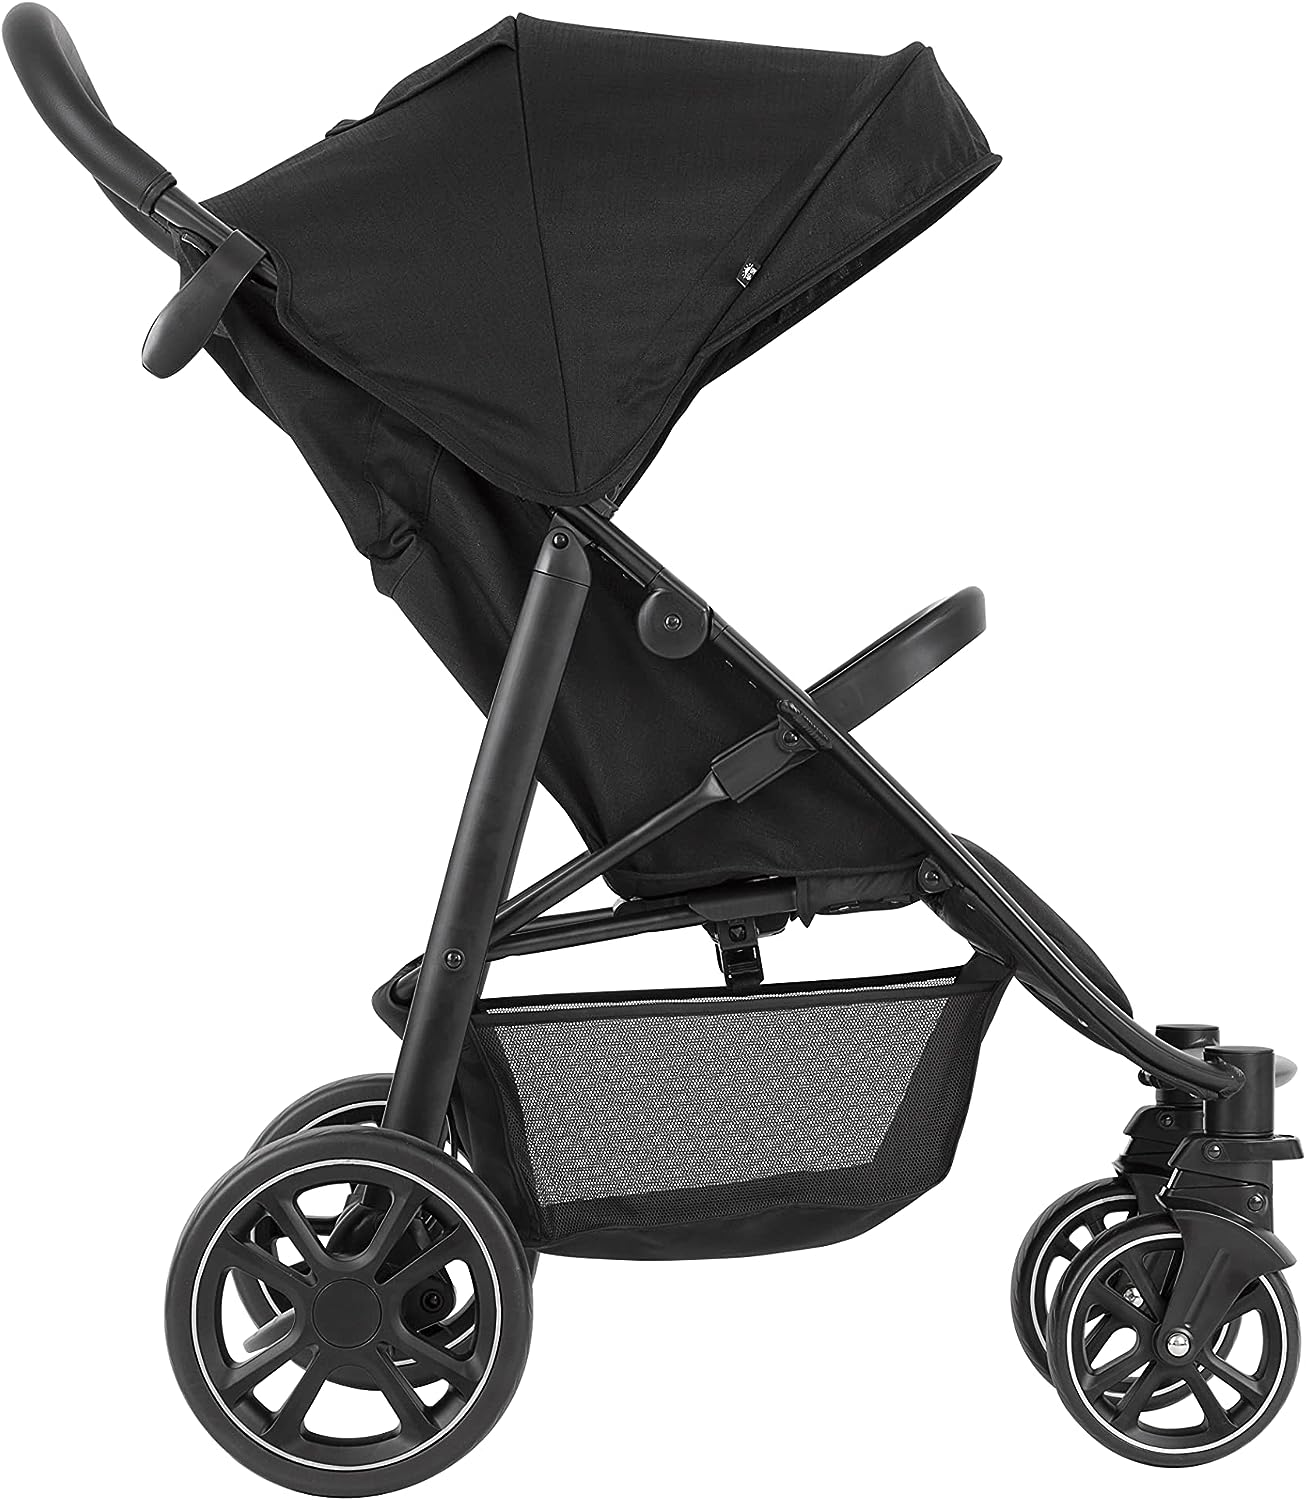 Graco Carrinho de bebê leve dobrável rápido EeZeFold, adequado desde o nascimento até aprox. 3 anos (15kg), compatível com Travel System (assento de carro vendido separadamente), Midnight Fashion